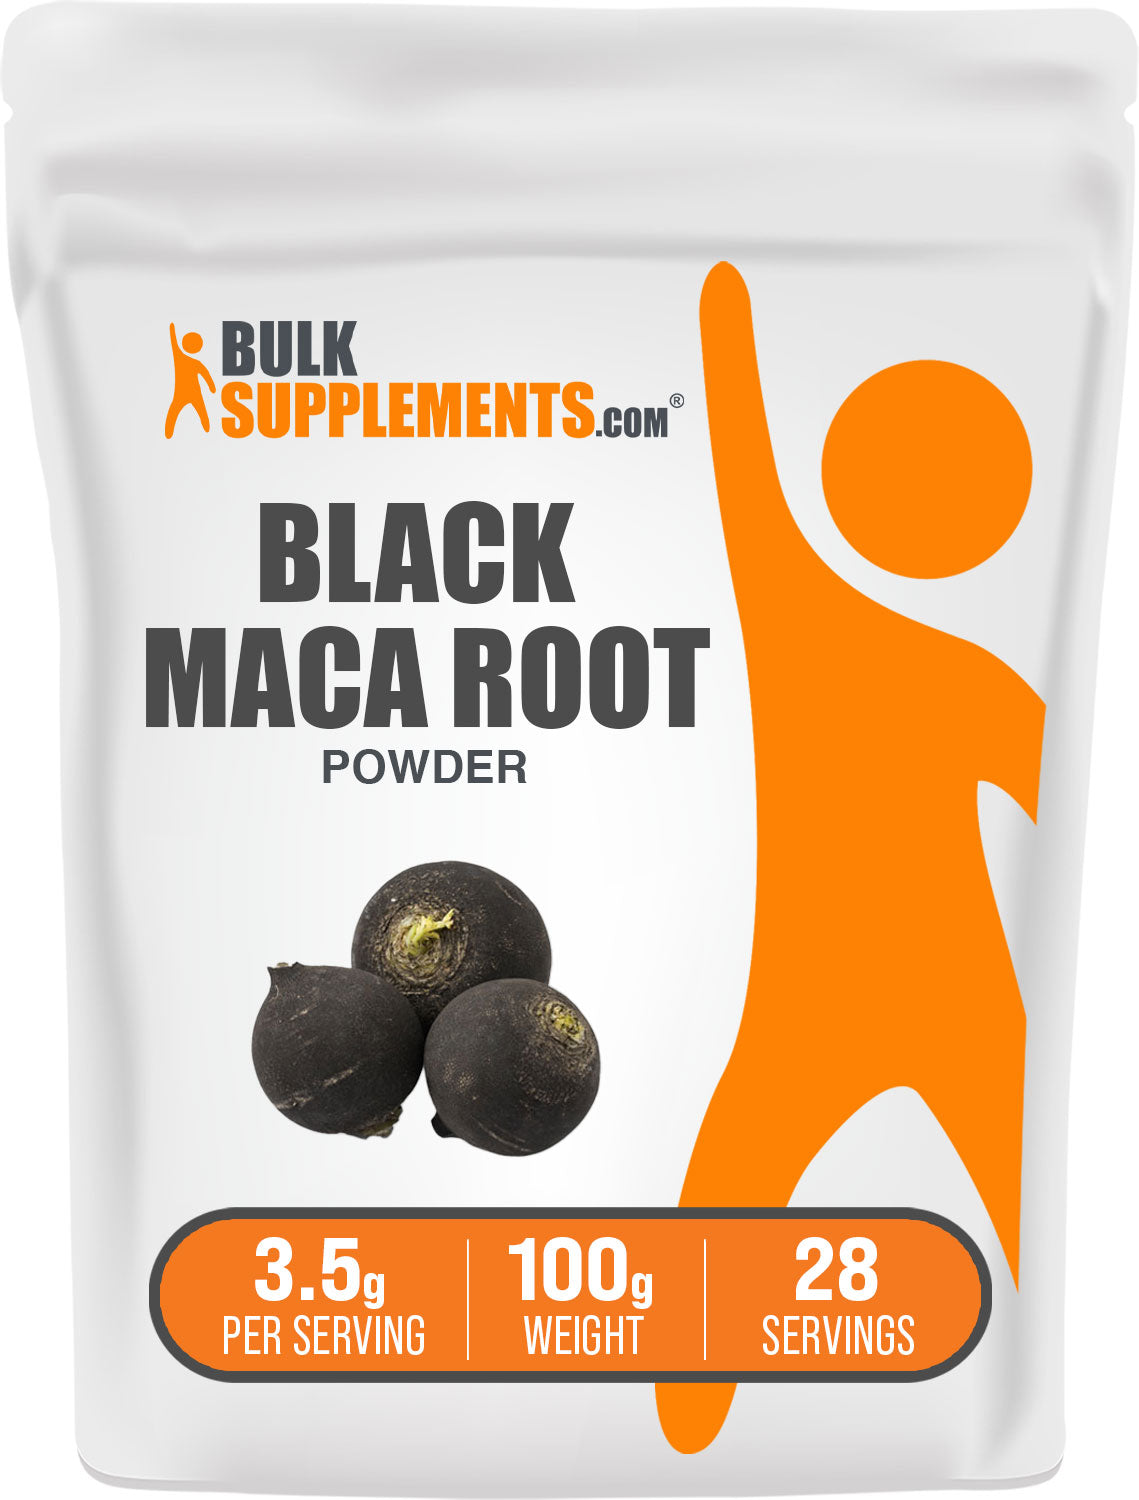 100g bag of black maca